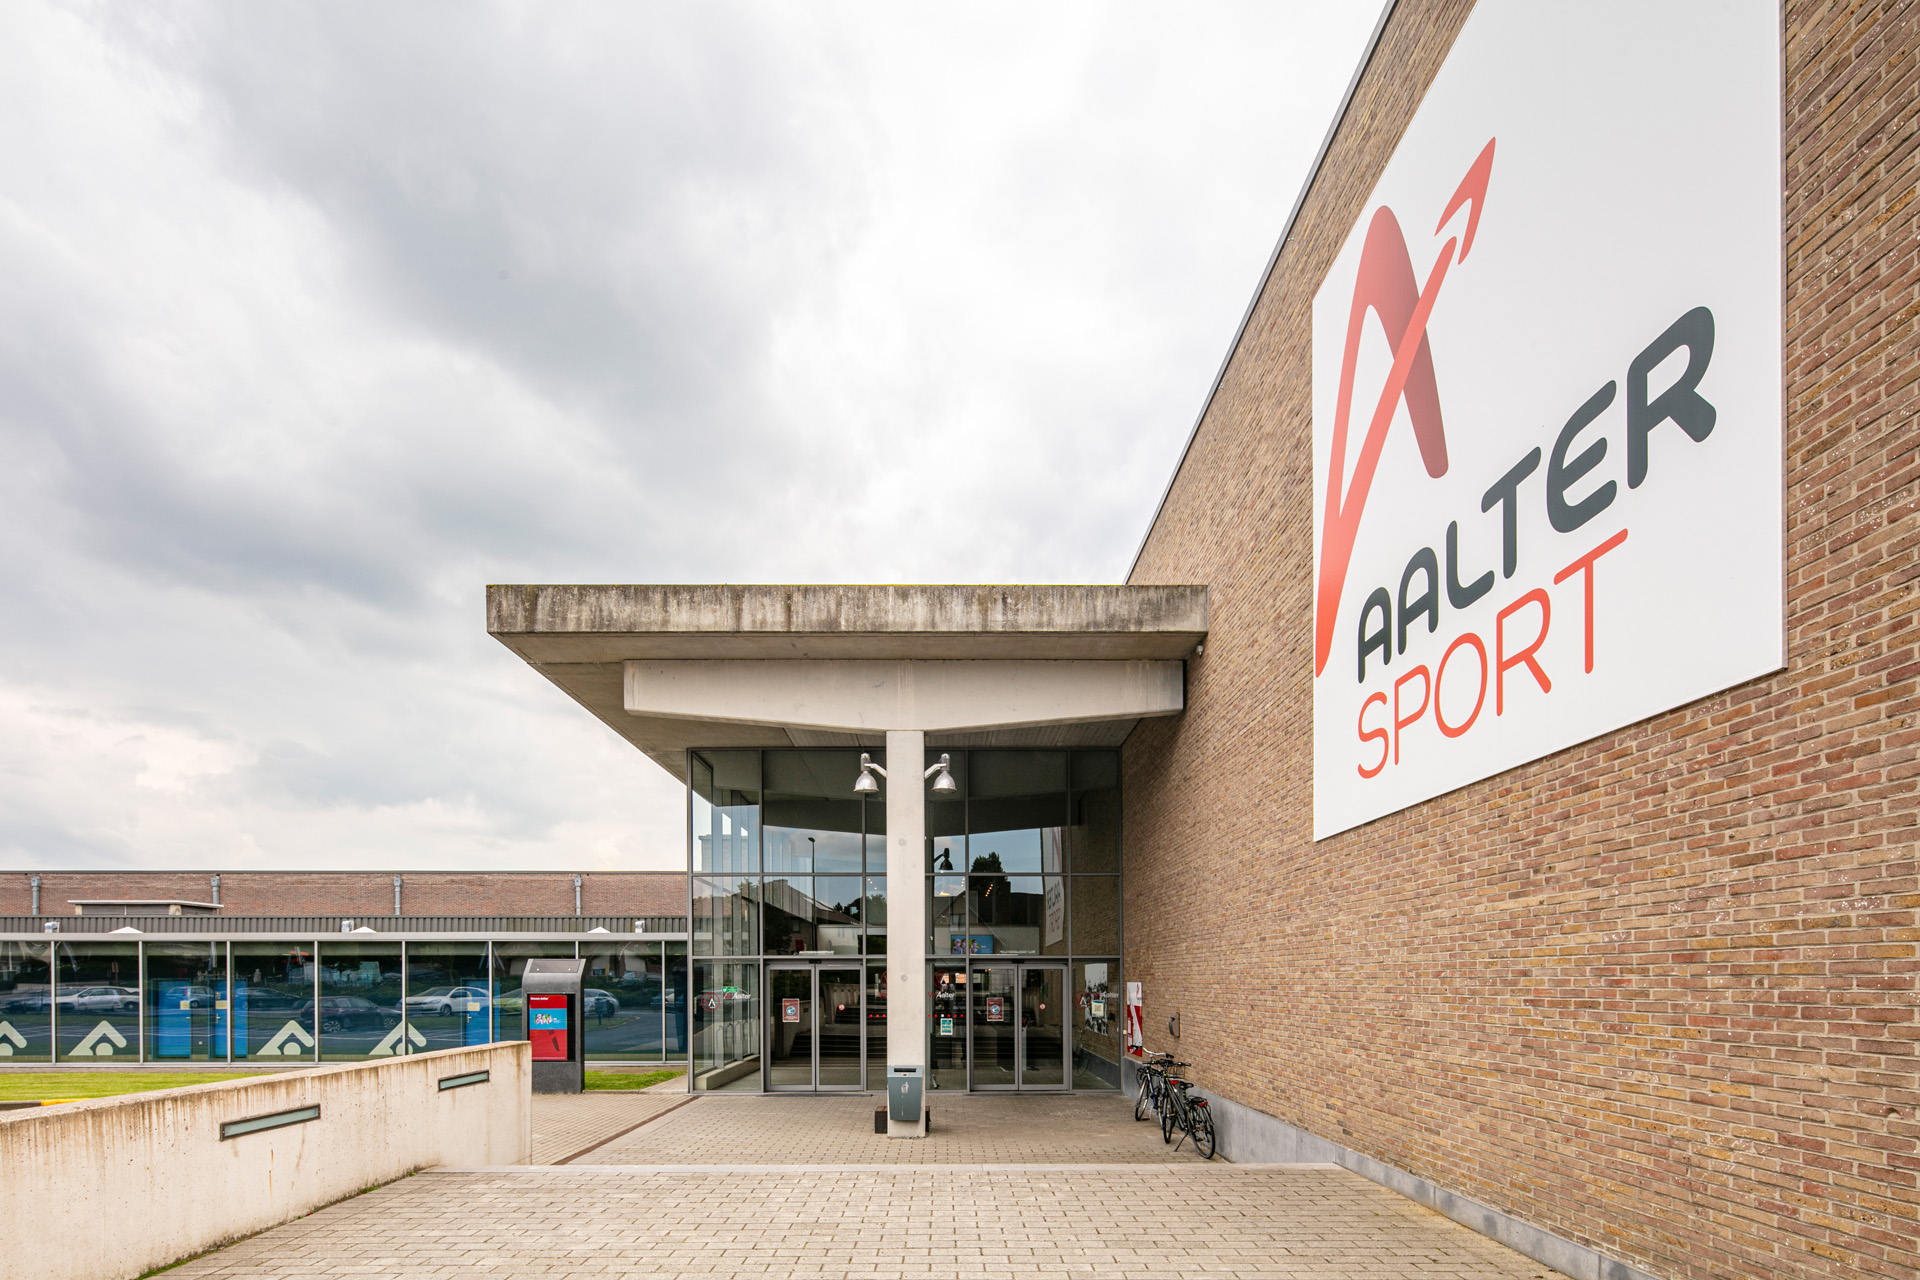 Sportpark Aalter